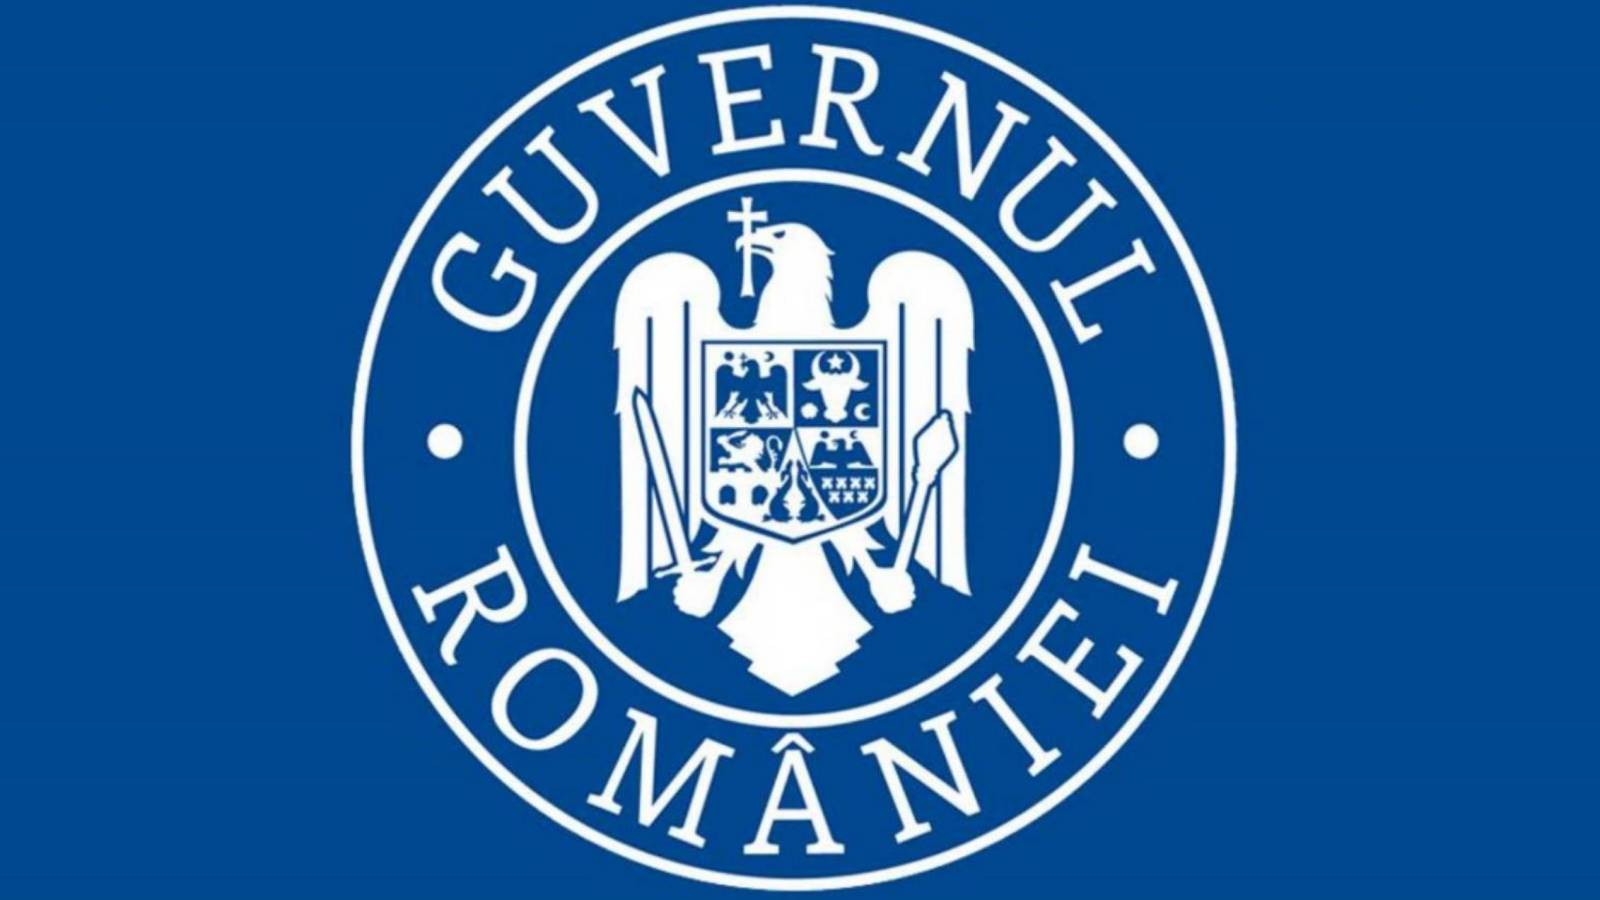 Cererea Guvernul Romaniei Romani